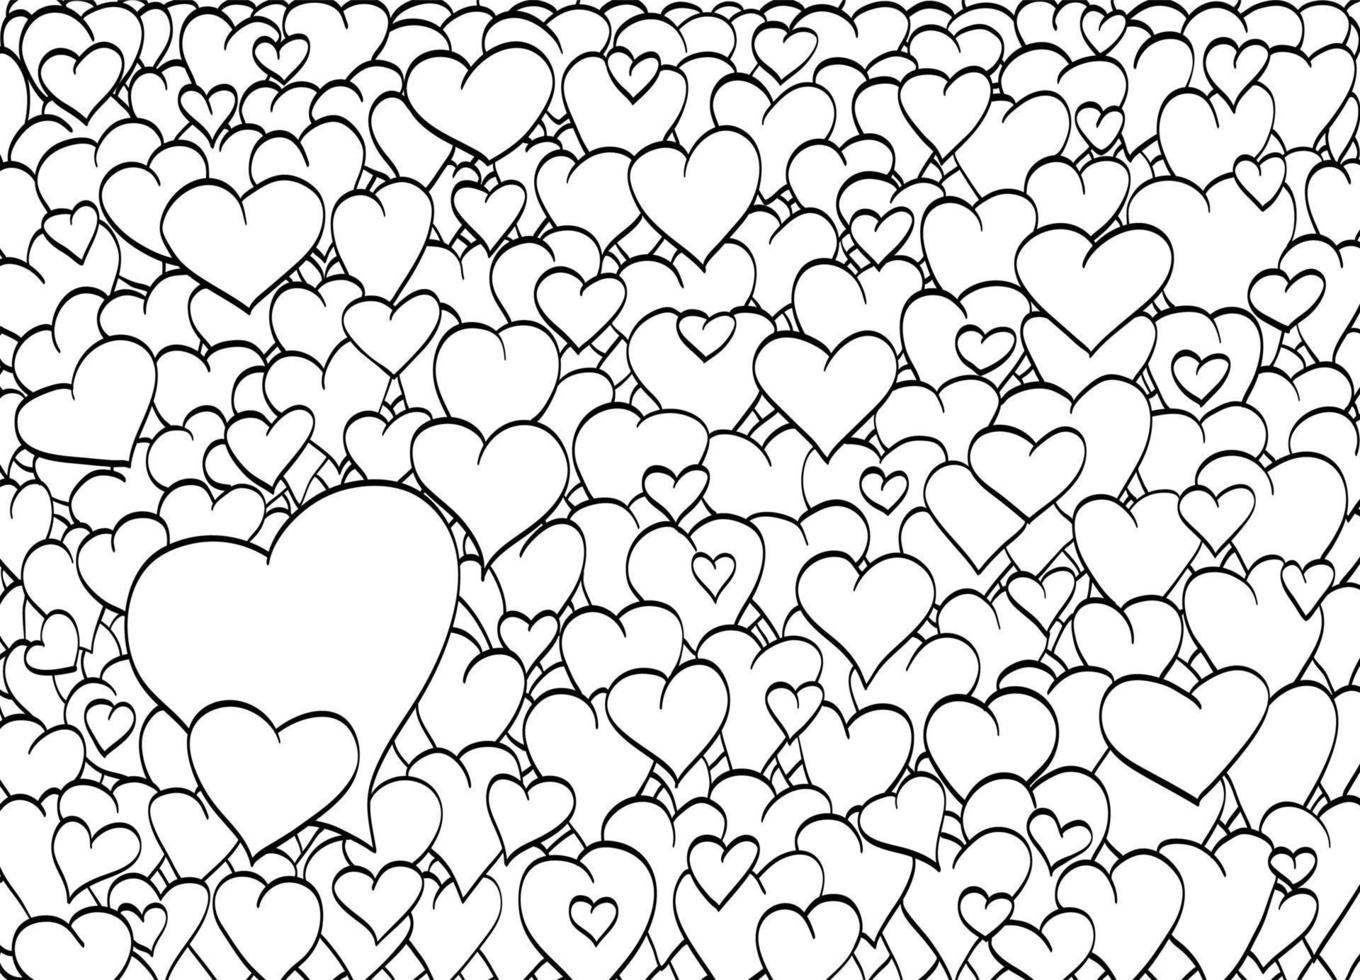 conjunto de corazones decorativos. fondo para un estado de ánimo romántico. ilustración del día de san valentín. postal con amor. vector